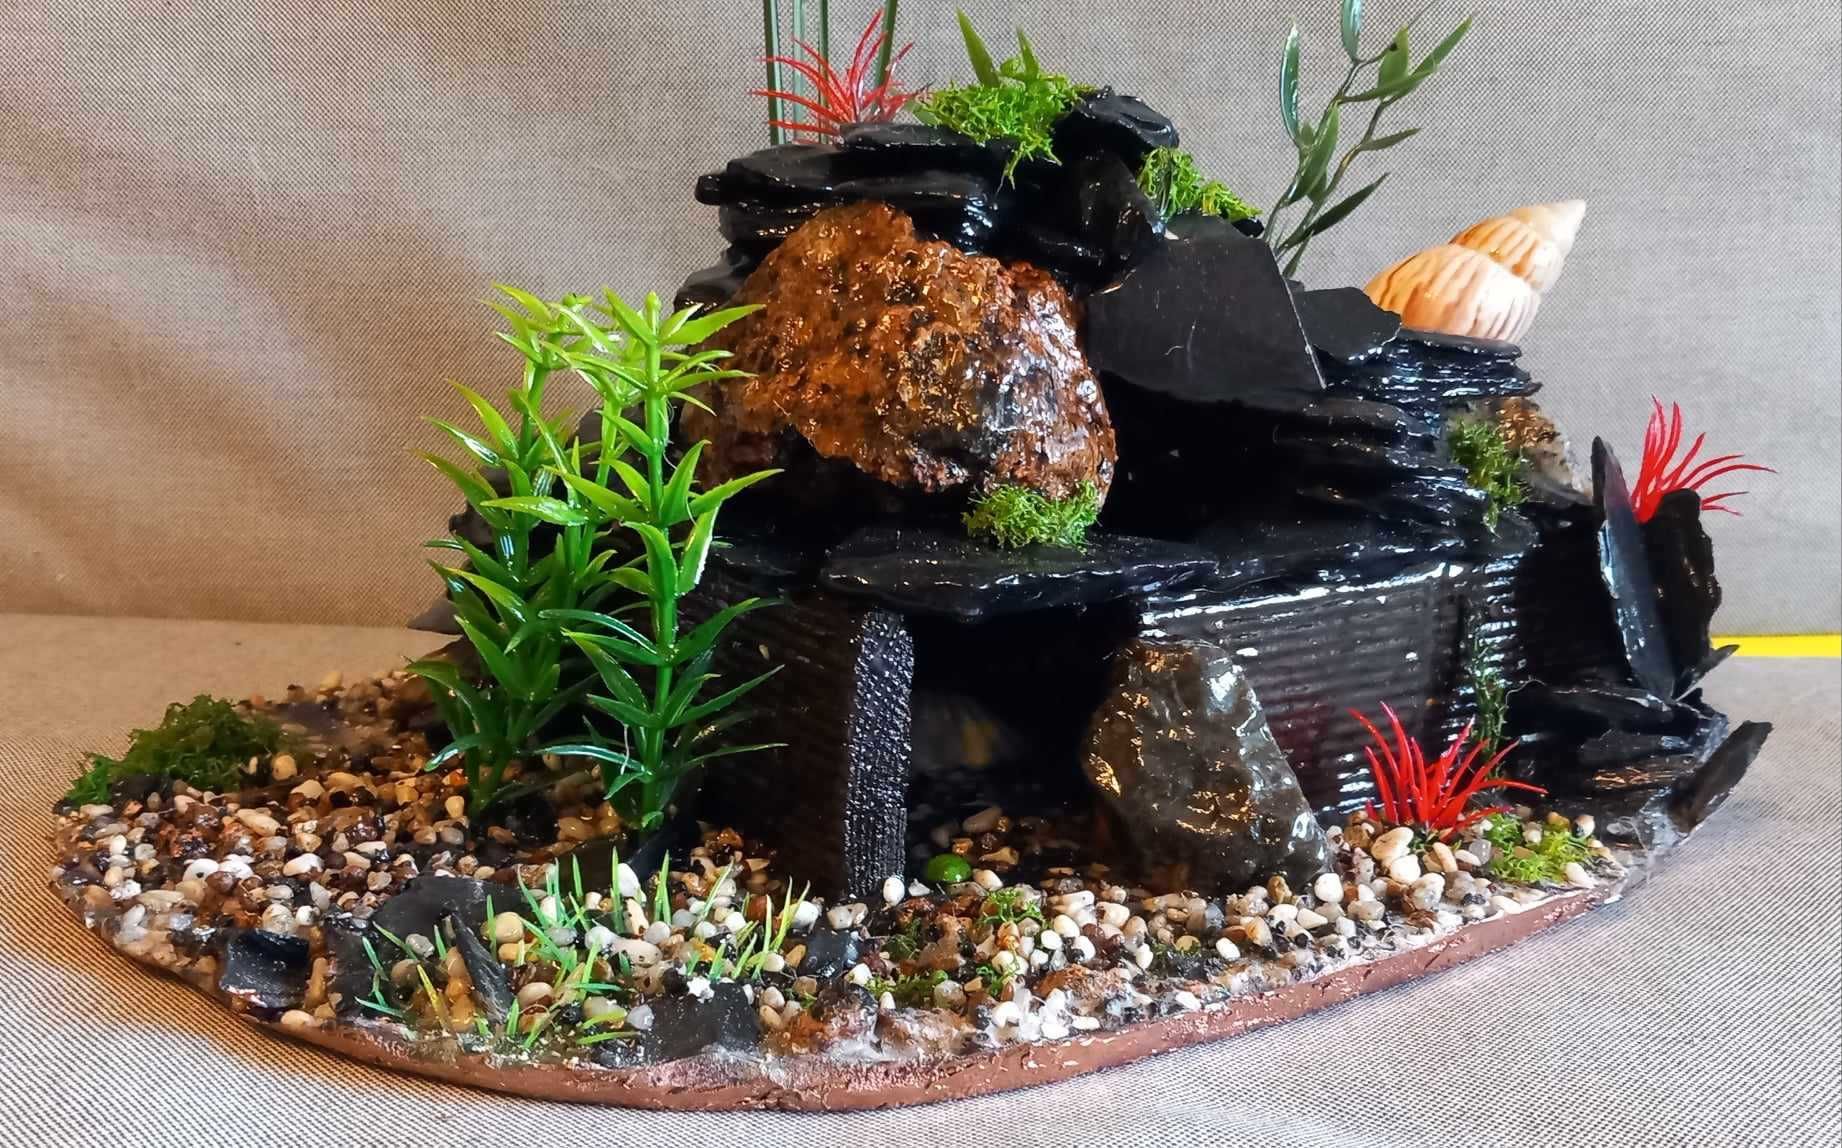 Ozdoba do akwarium – skalny domek